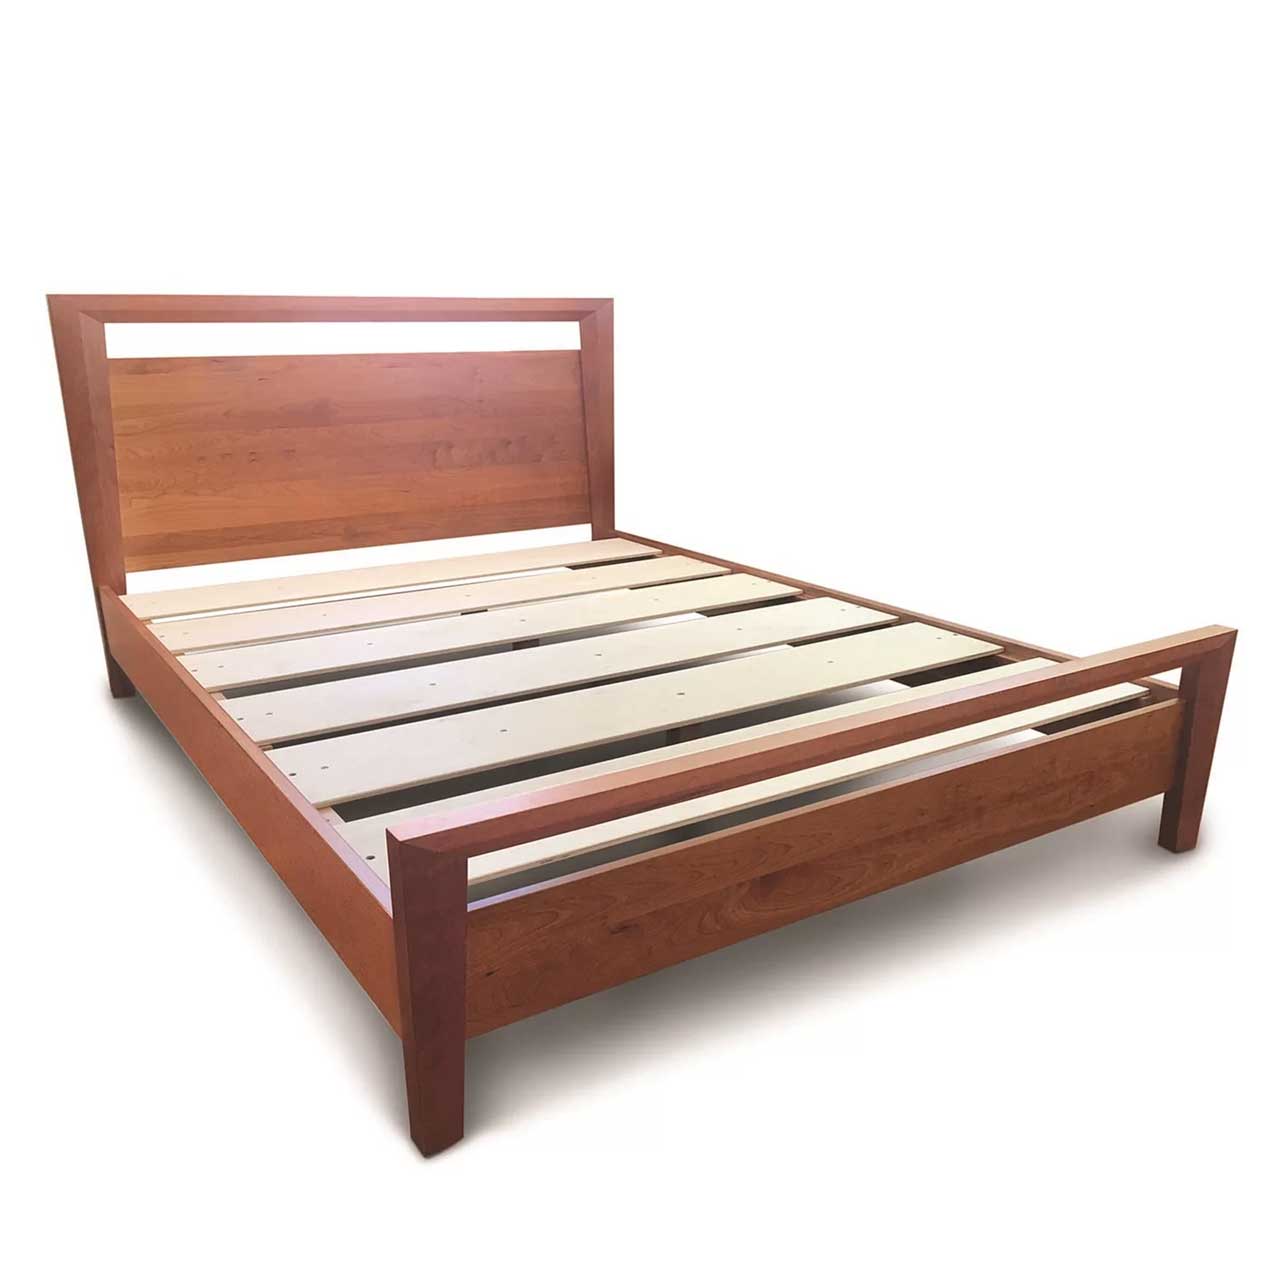 تخت خواب دو نفره تمام چوب صادراتی کد 56.0 سایز 200*213 سانتی متر